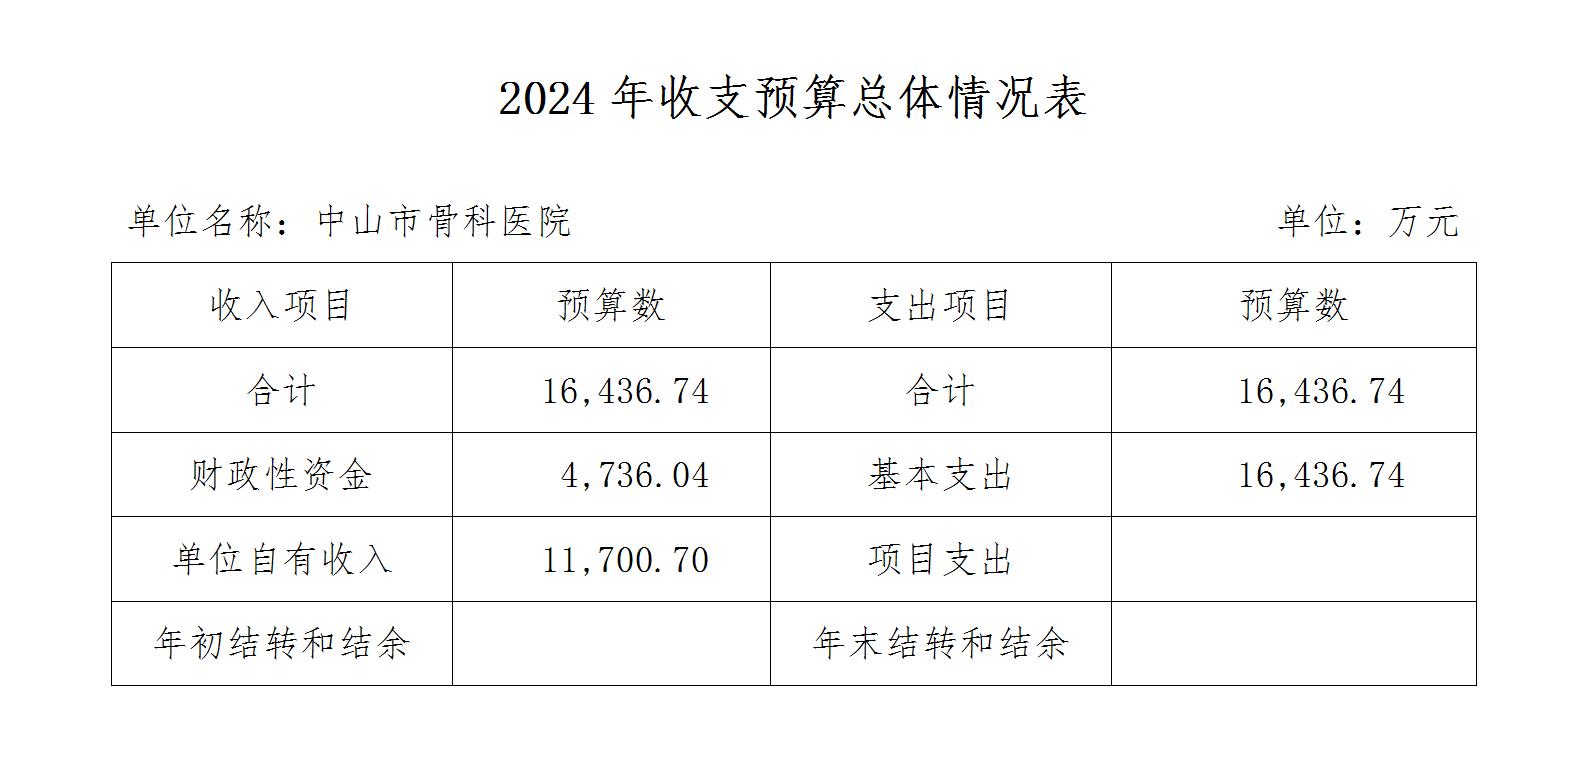 中山市骨科医院2024年收支预算总体情况表_01.jpg